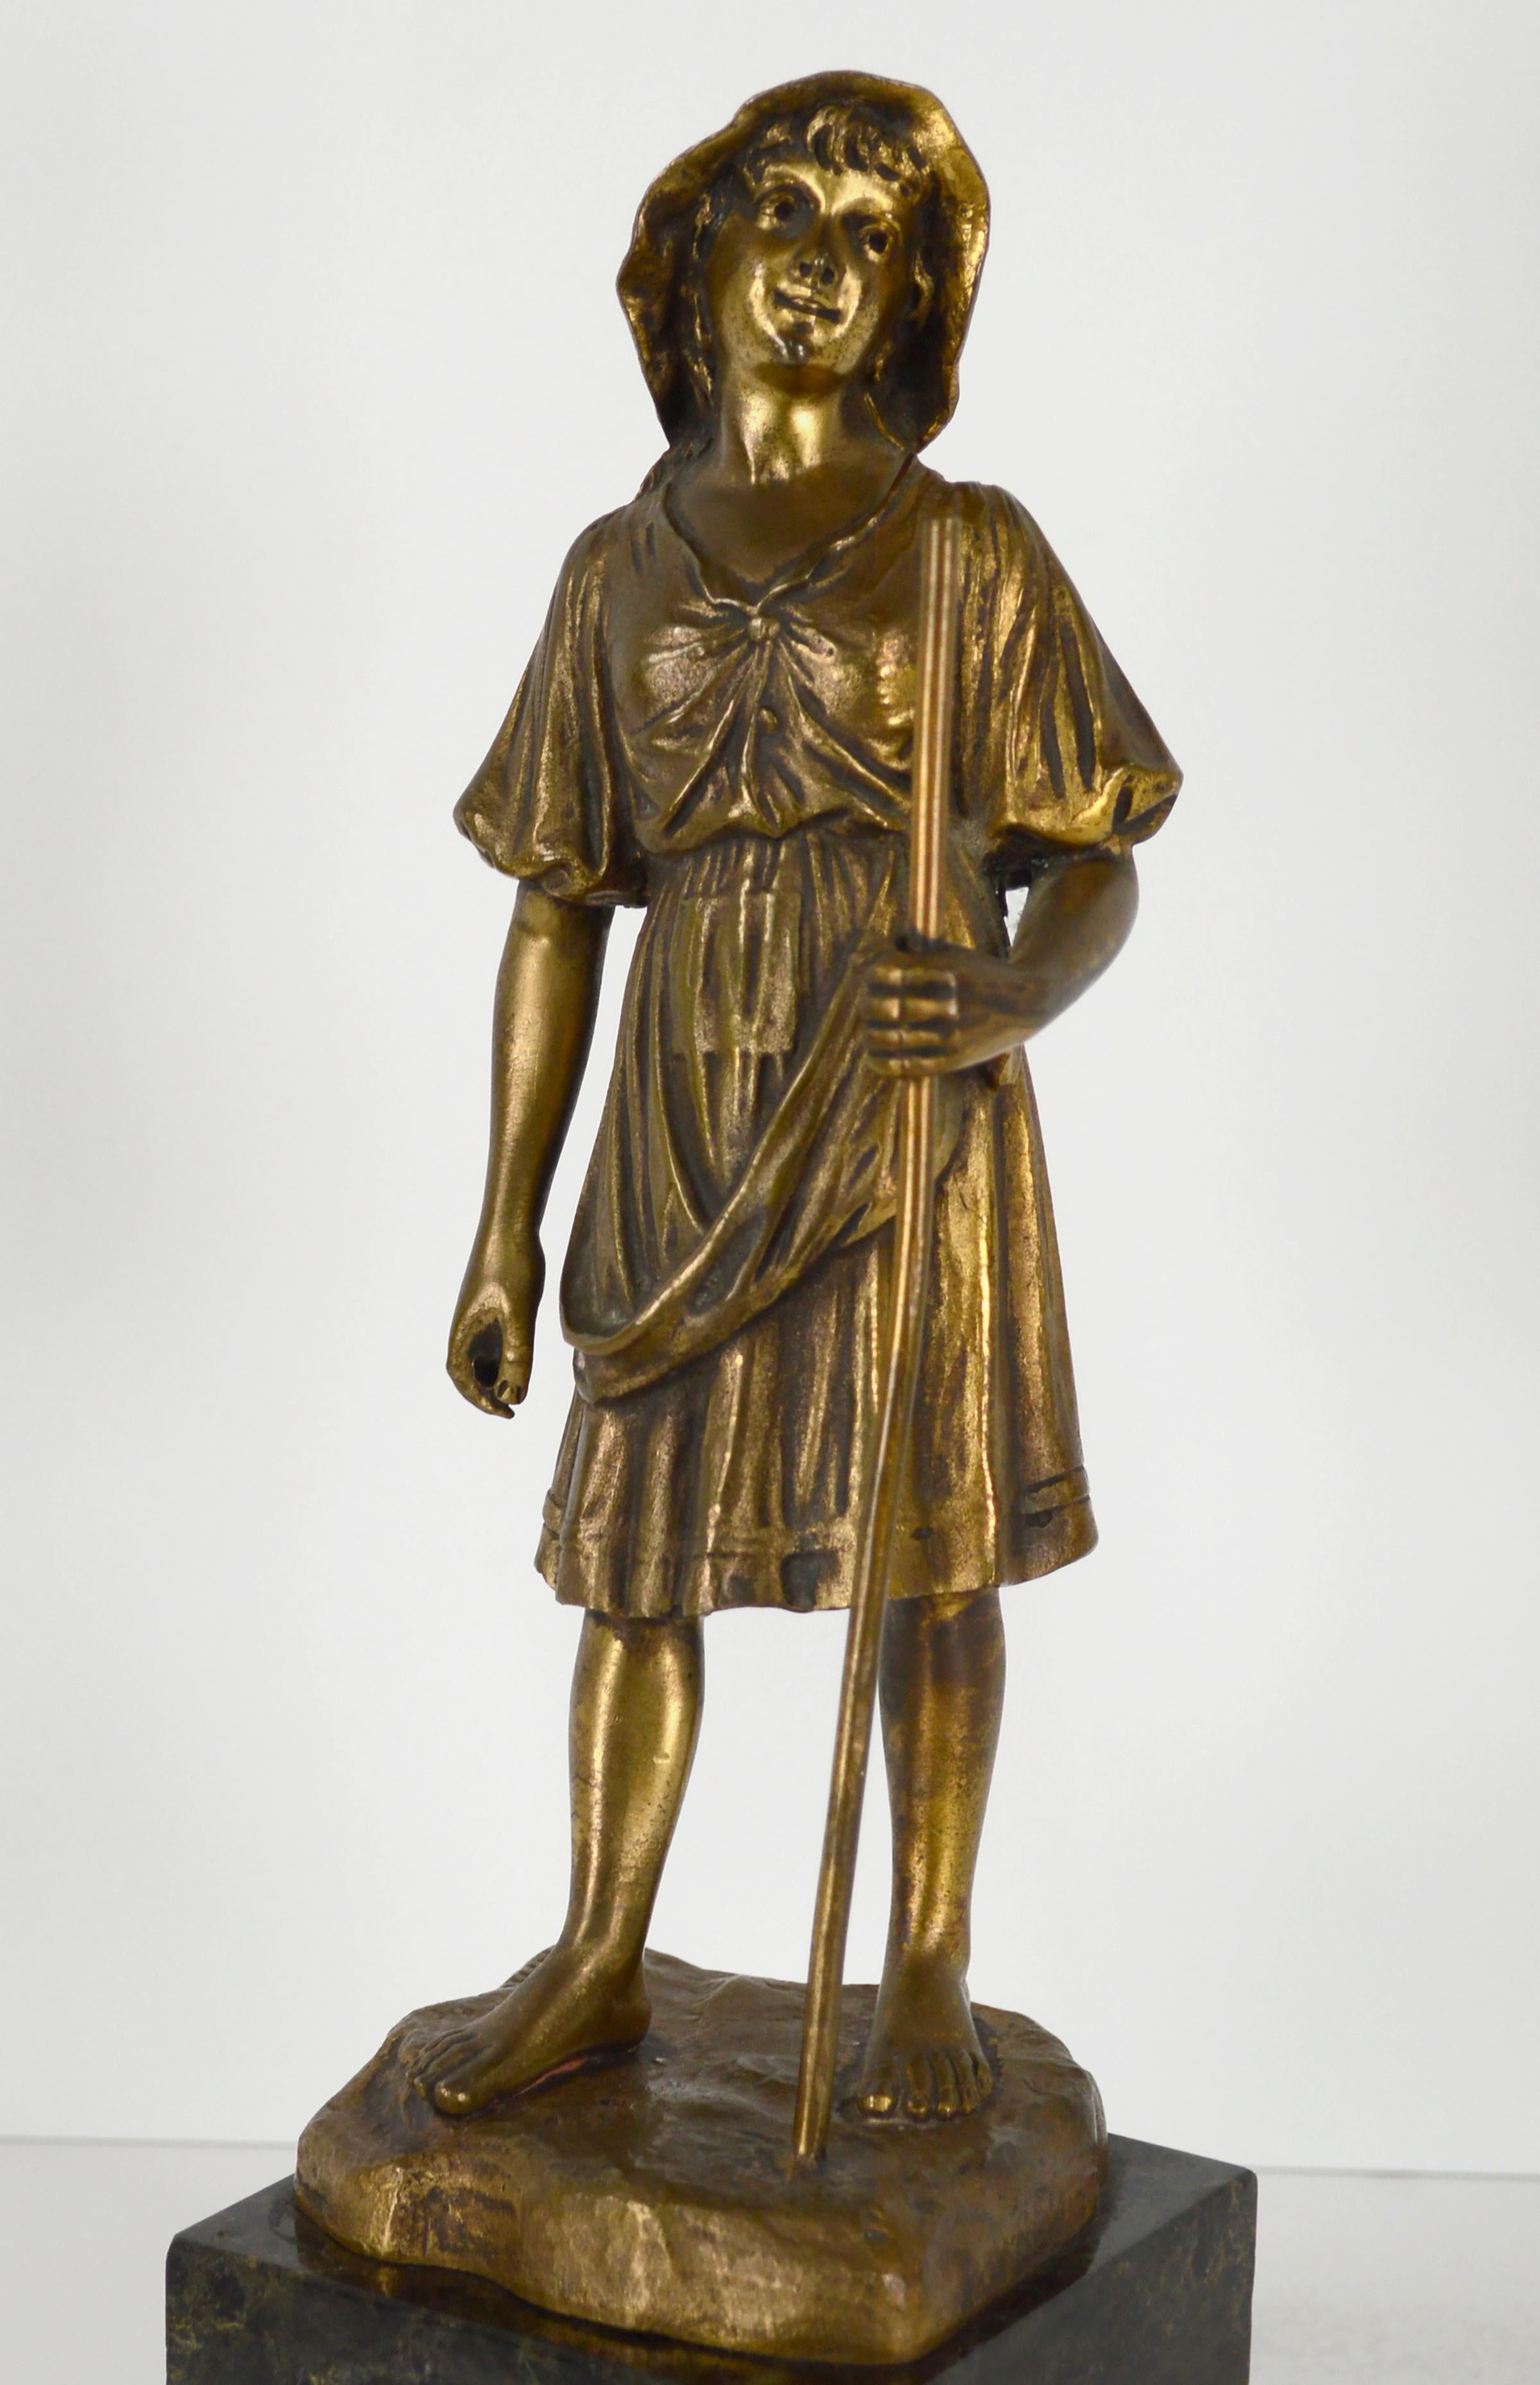 Merveilleuse sculpture figurative miniature en bronze coulé représentant une jeune bergère aux pieds nus tenant un bâton par R. Hobold (allemand, 19e s.). La fille est vêtue d'une robe paysanne fluide et d'un chapeau mou, et a un pied en avant comme